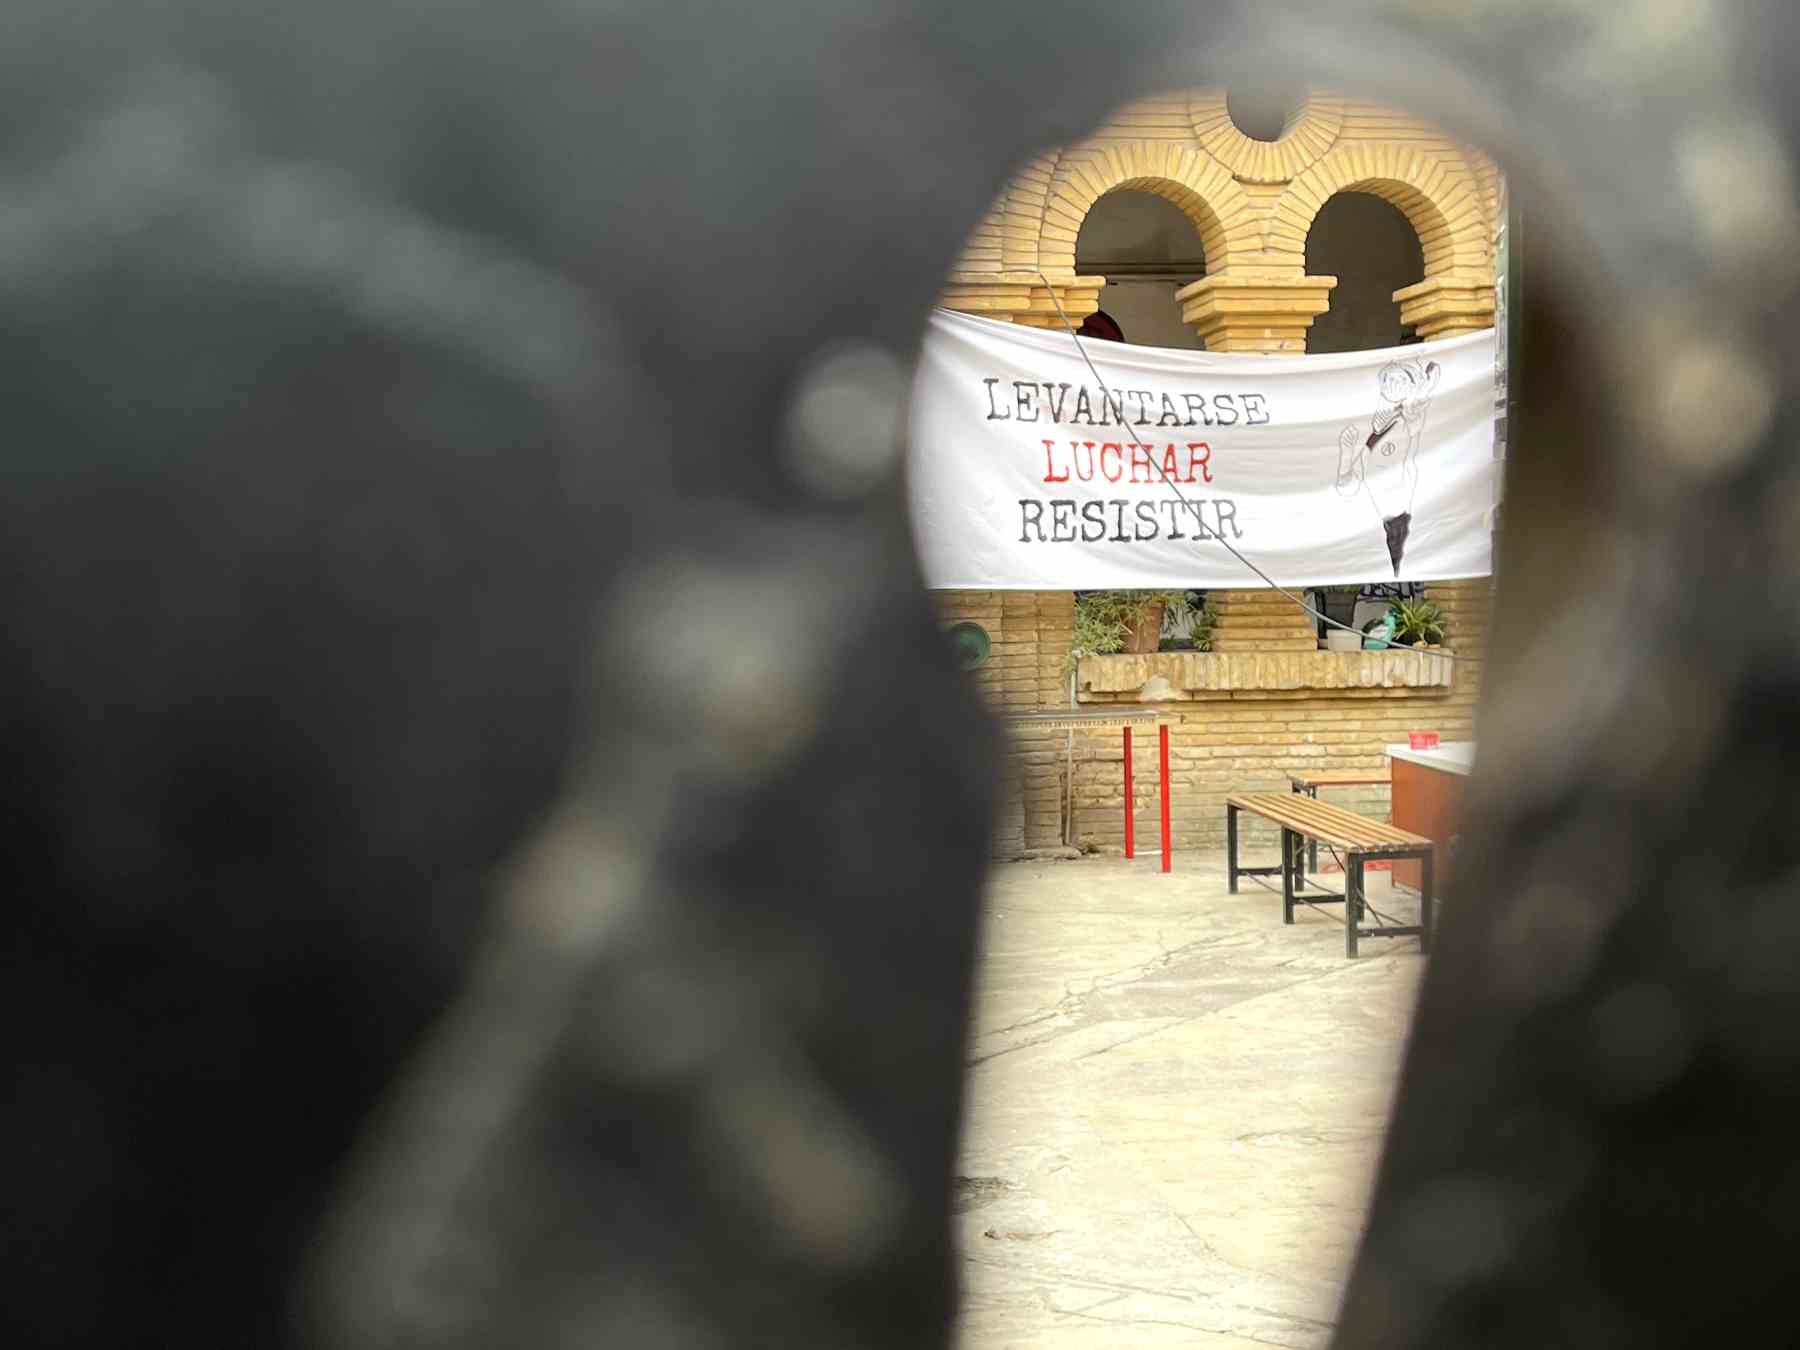 Imagen desde la mirilla del edificio ocupado por el CSO Kike Mur, donde se vislumbra la pancarta que alienta la violencia.